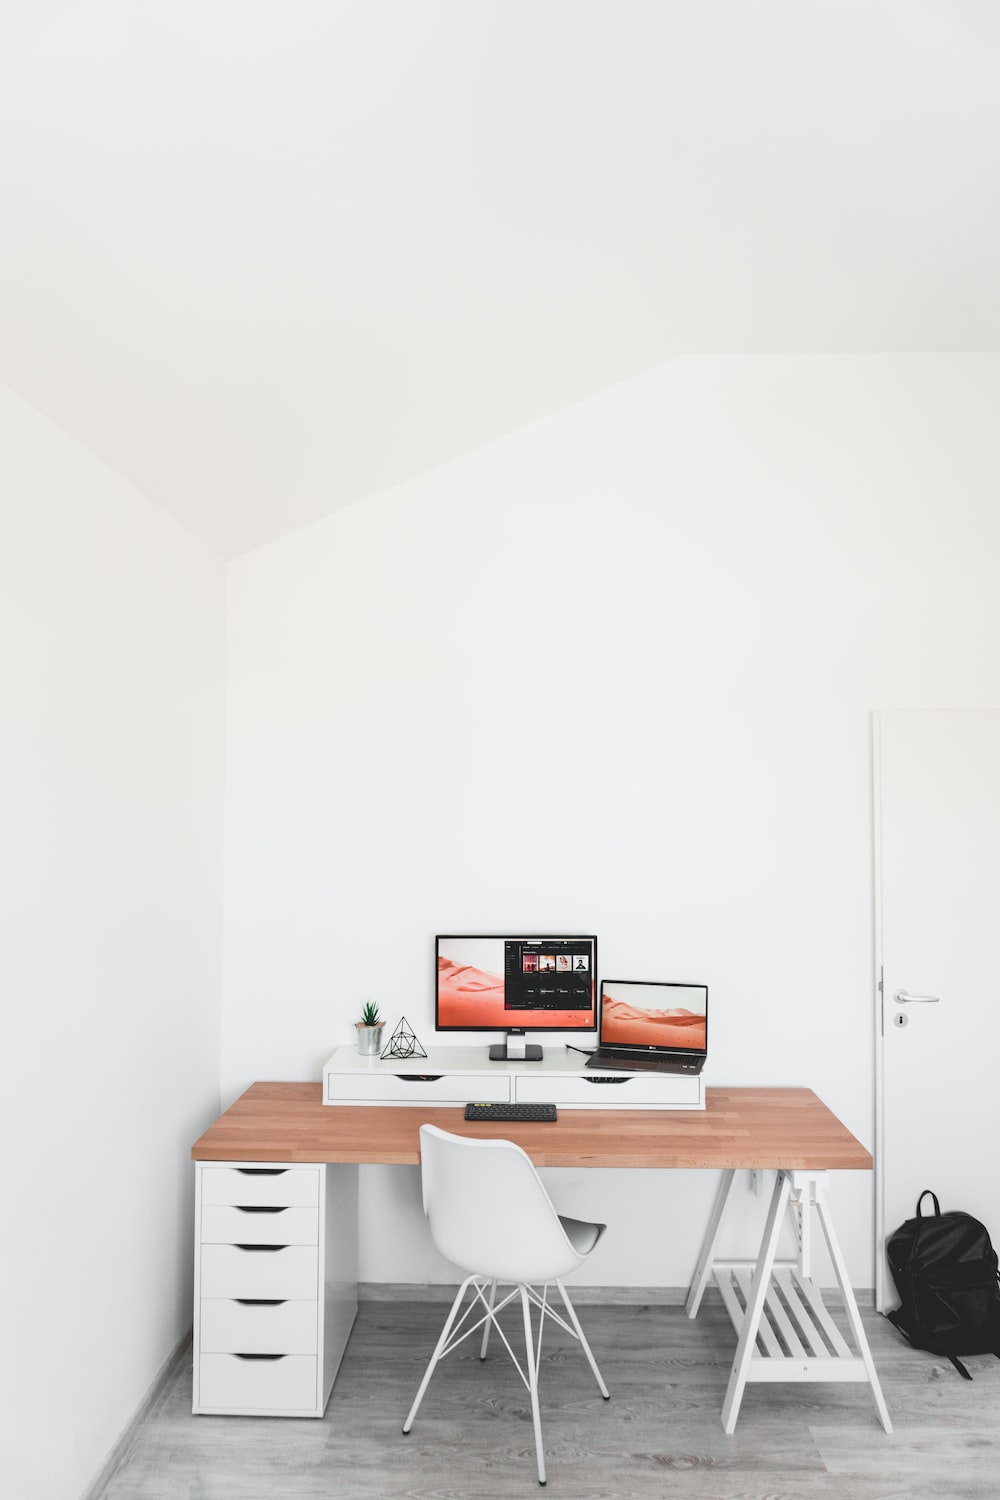 How do you make a desk wall?